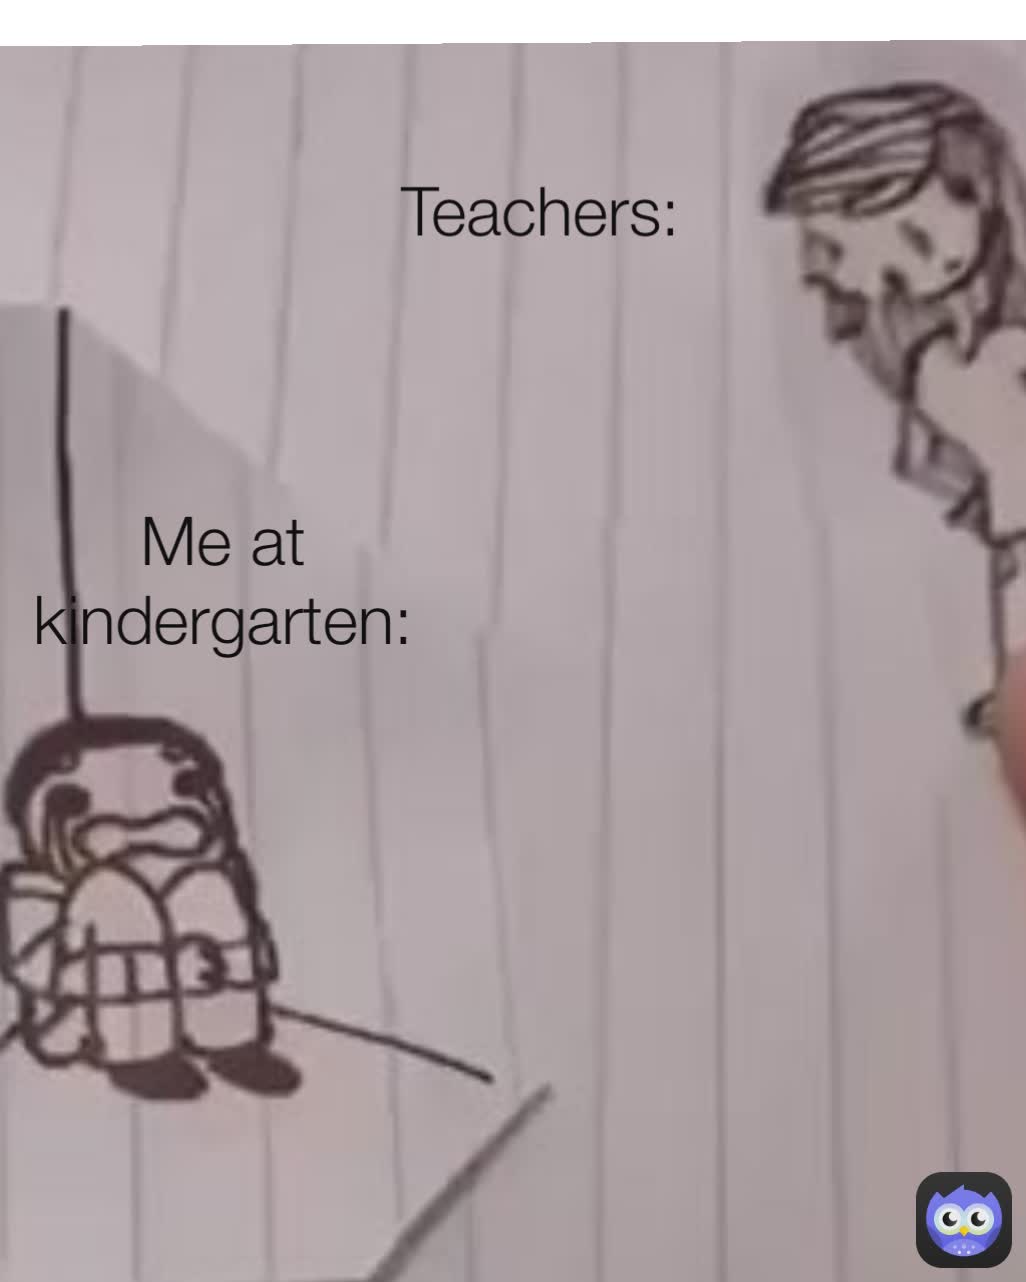 Me at kindergarten:
 Teachers:
